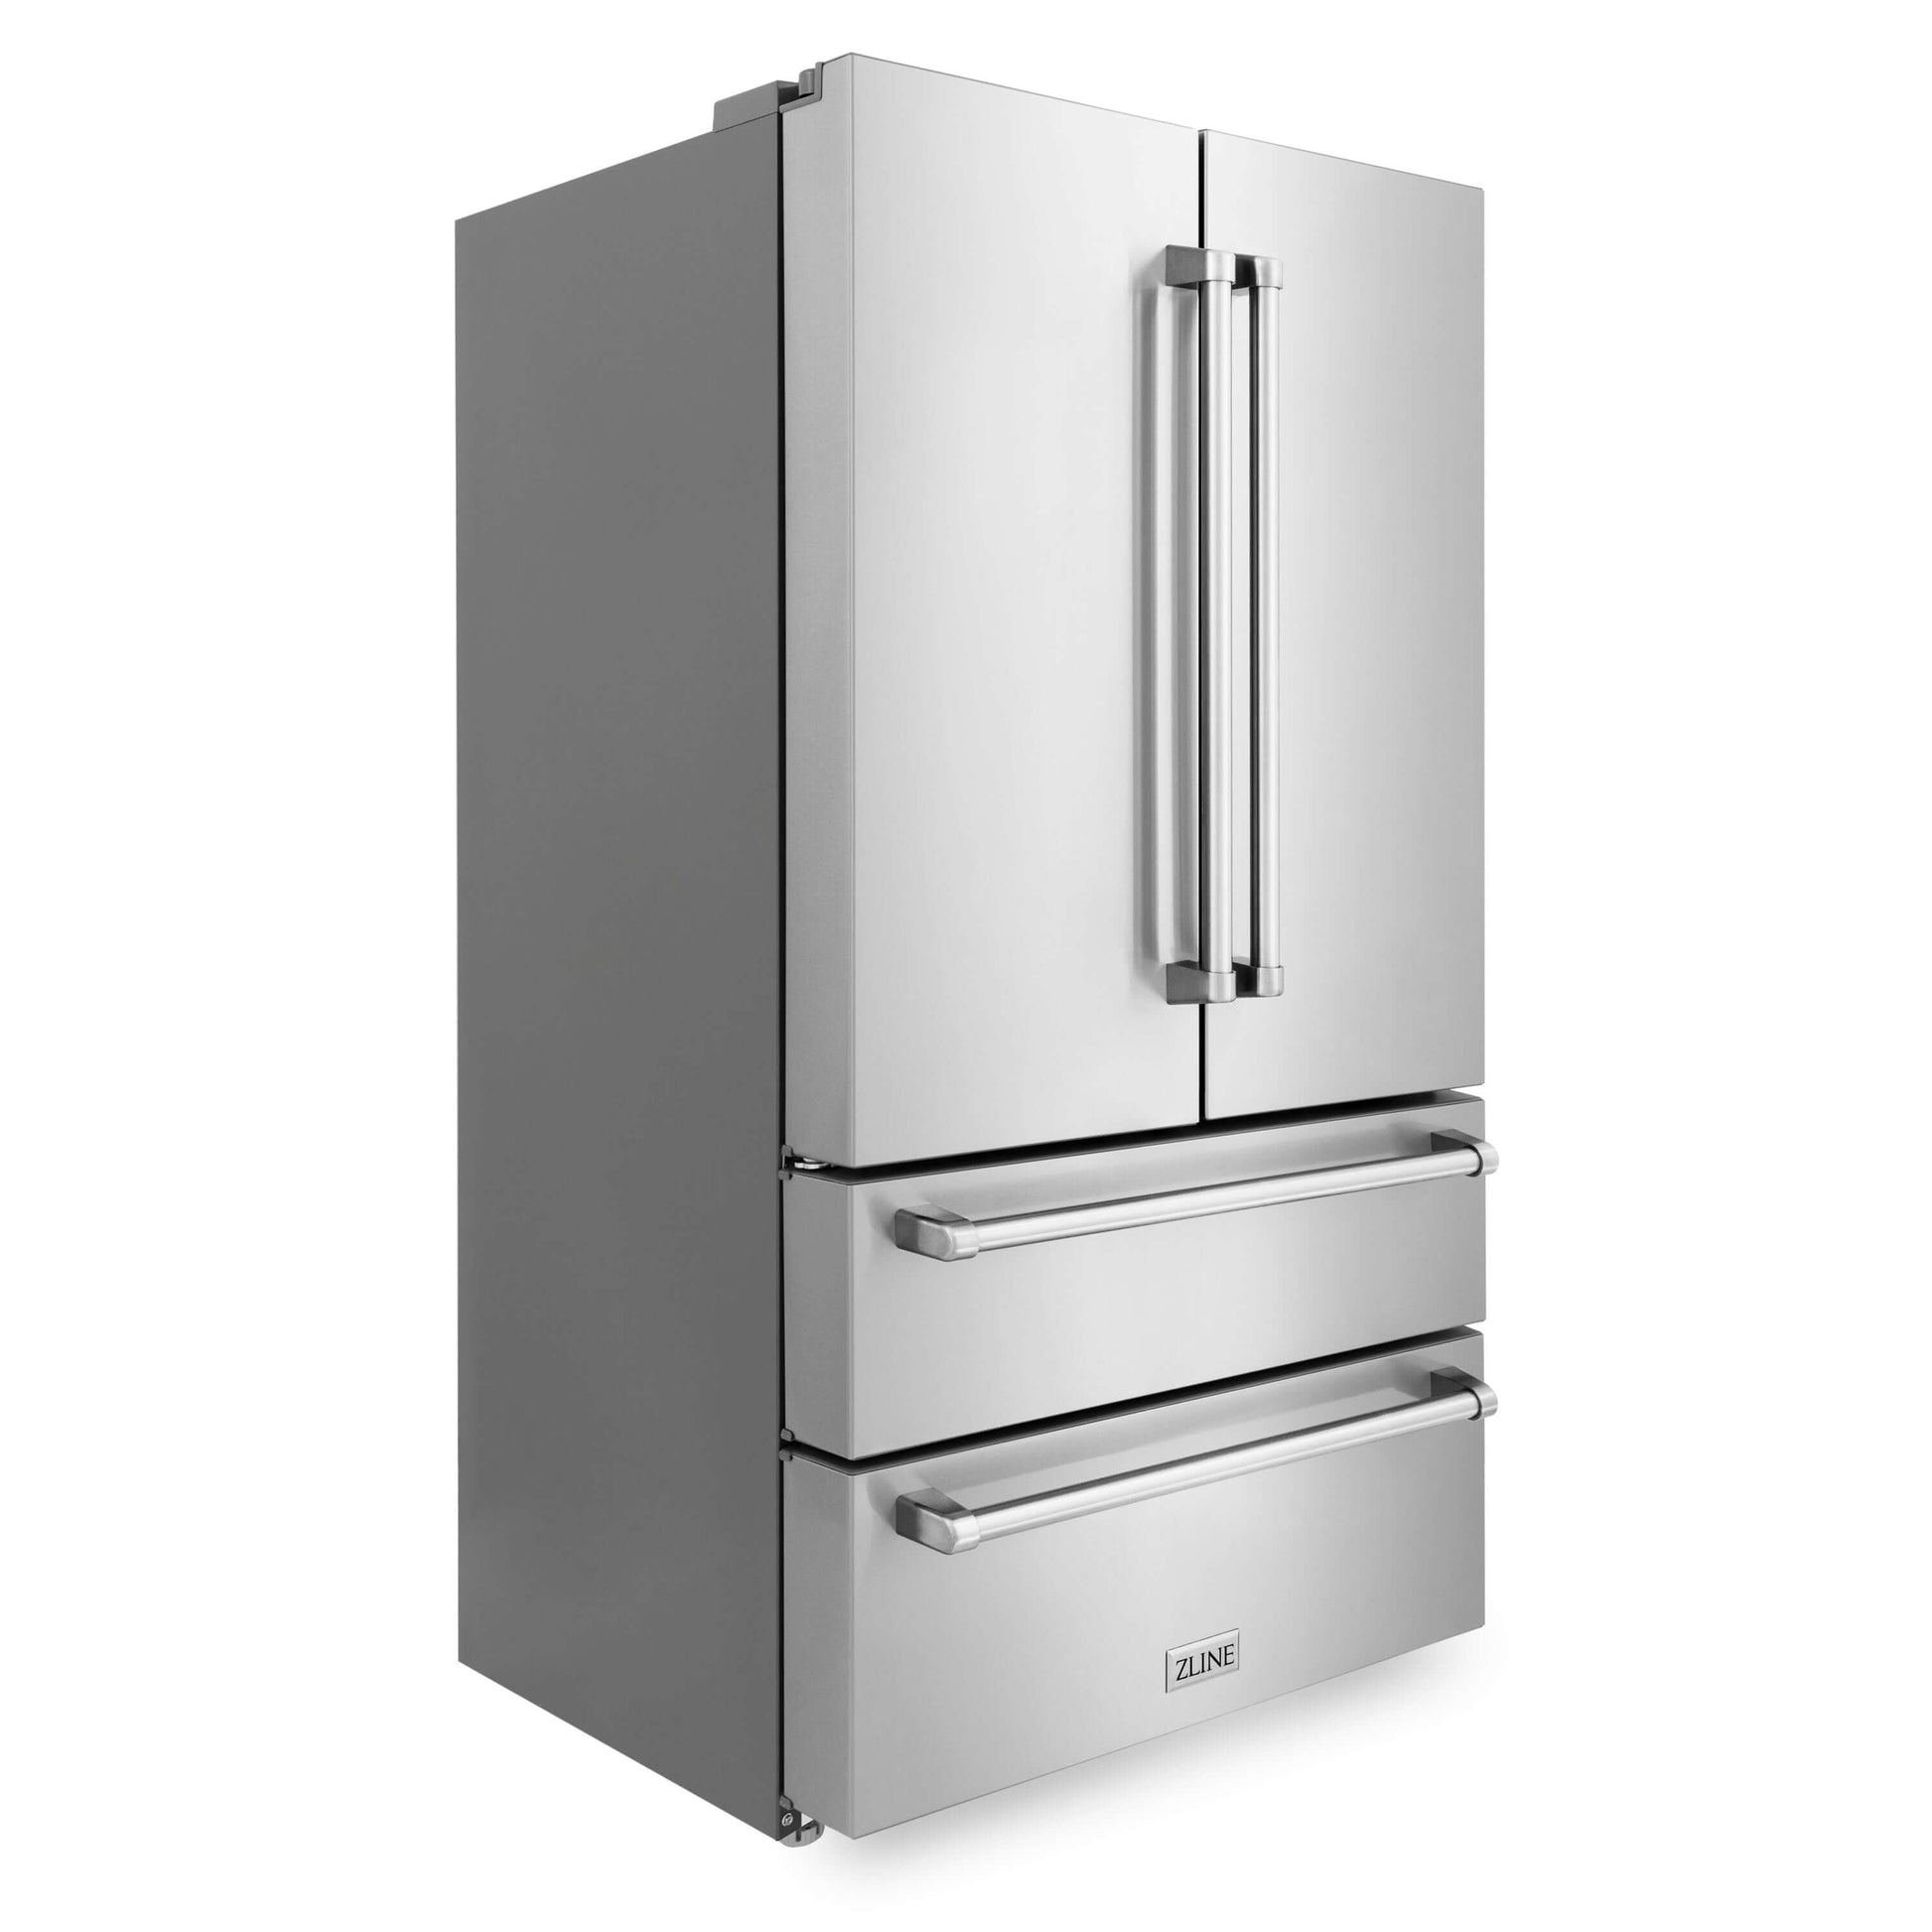 ZLINE 36" Freestanding French Door Refrigerator with Internal Ice Maker